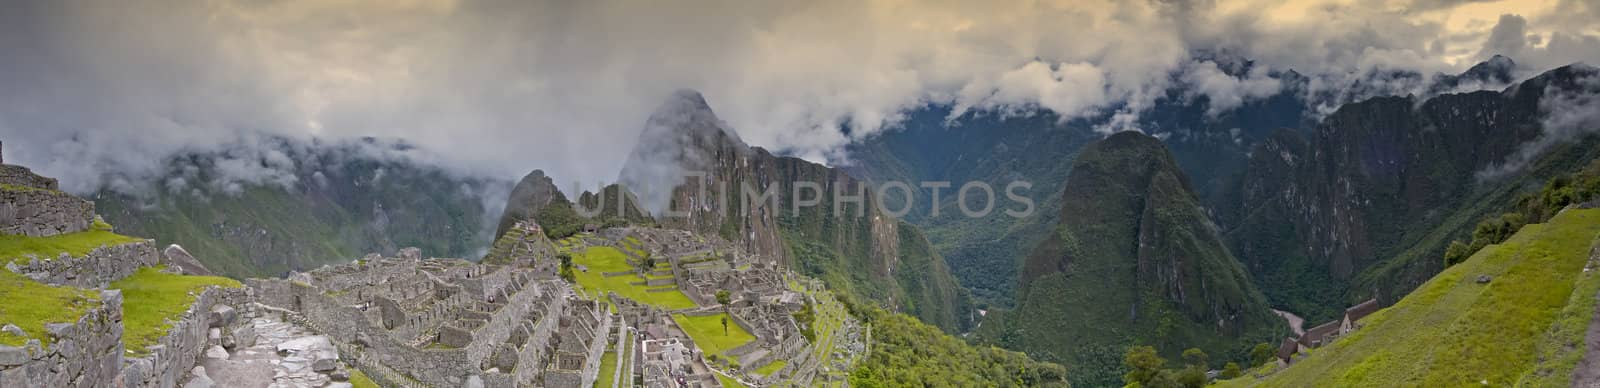 Machu Picchu Panoramic by urmoments